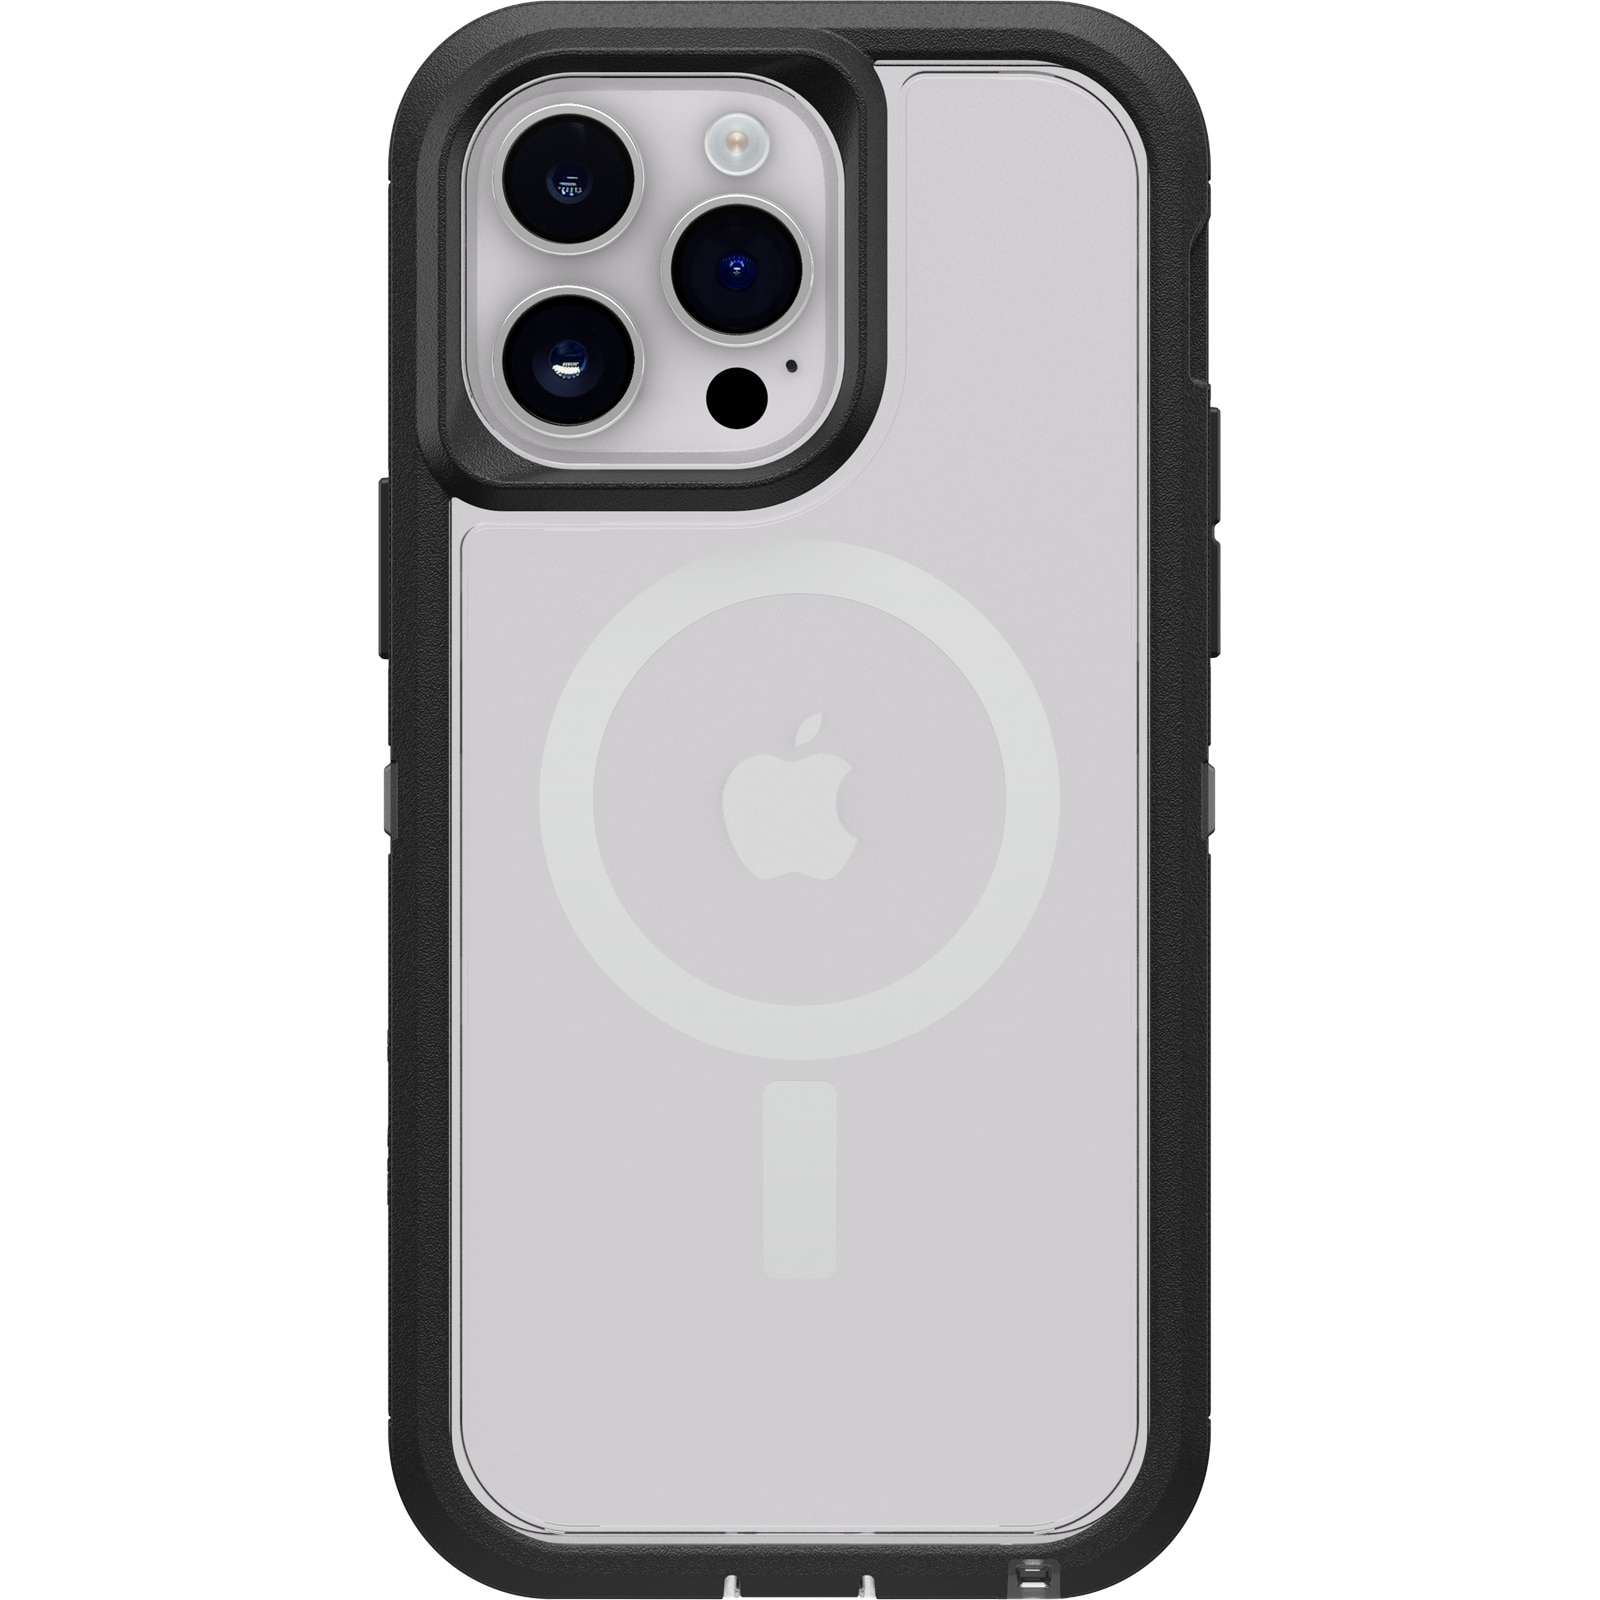 Defender XT Skal iPhone 14 Pro svart/transparent